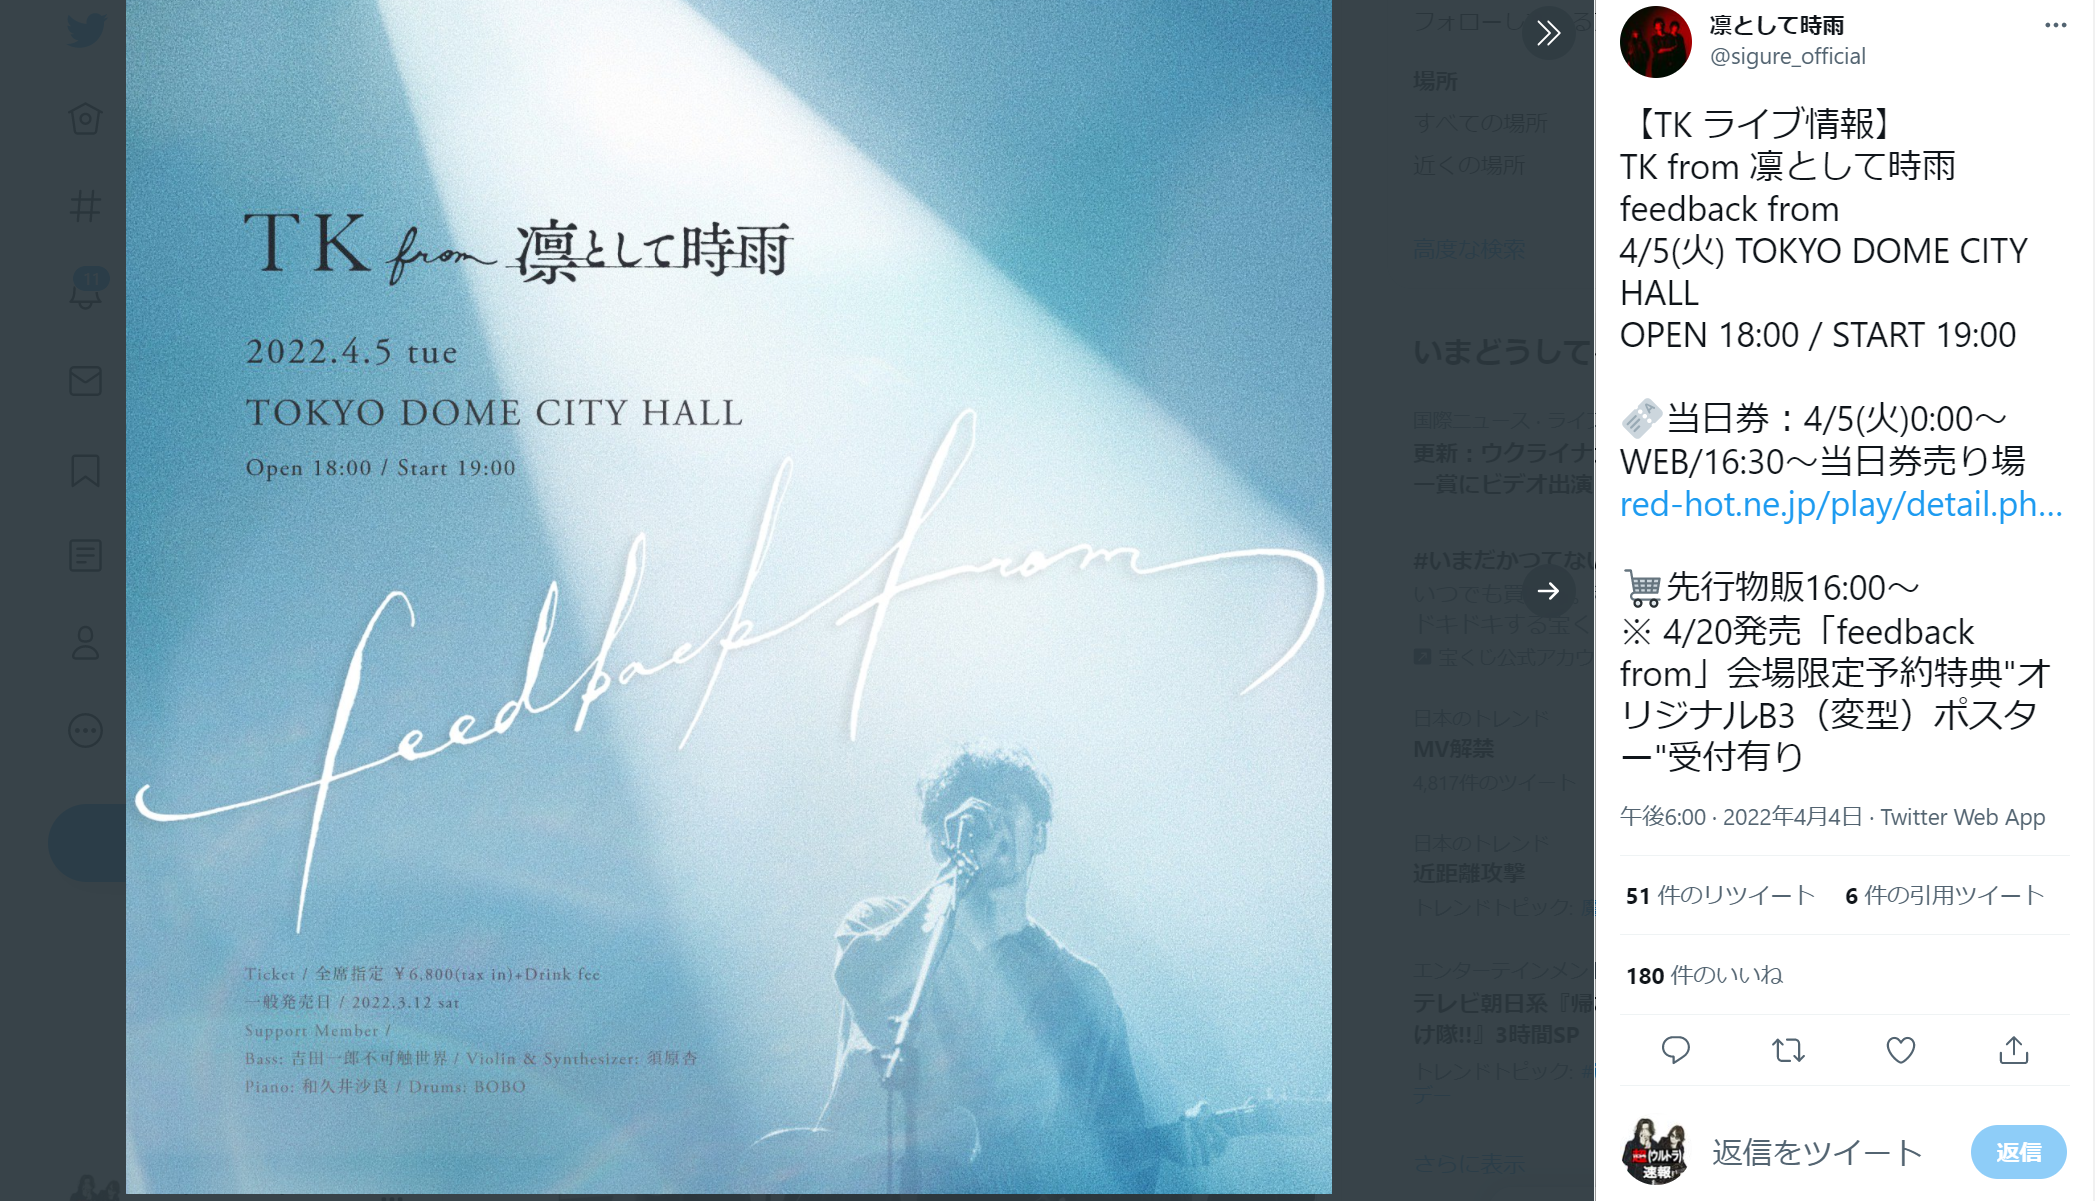 TK from 凛として時雨のTOKYO DOME CITY HALLでの公演を告知するTwitter投稿